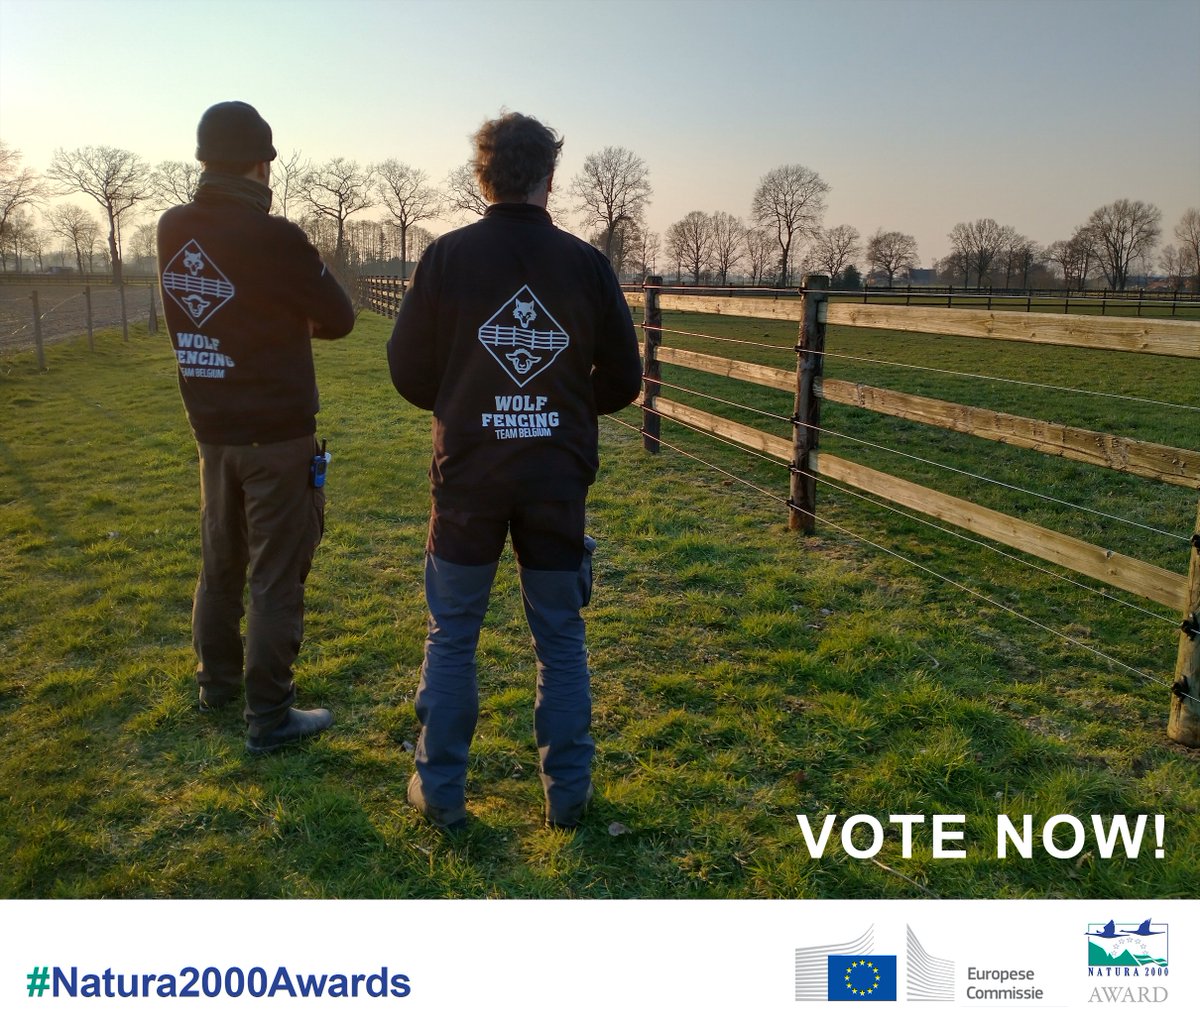 📣Vandaag laatste kans om te stemmen!📣 Samenleven tussen mens en wolf dat moet toch mogelijk zijn?🐺Vind jij dat ook? ✏️Stem dan op het #WolfFencingTeamBelgium voor de Natura 2000 Award!🏆 environment.ec.europa.eu/news/wolf-fenc… 💚Wie helpt retweeten? 💚🙏